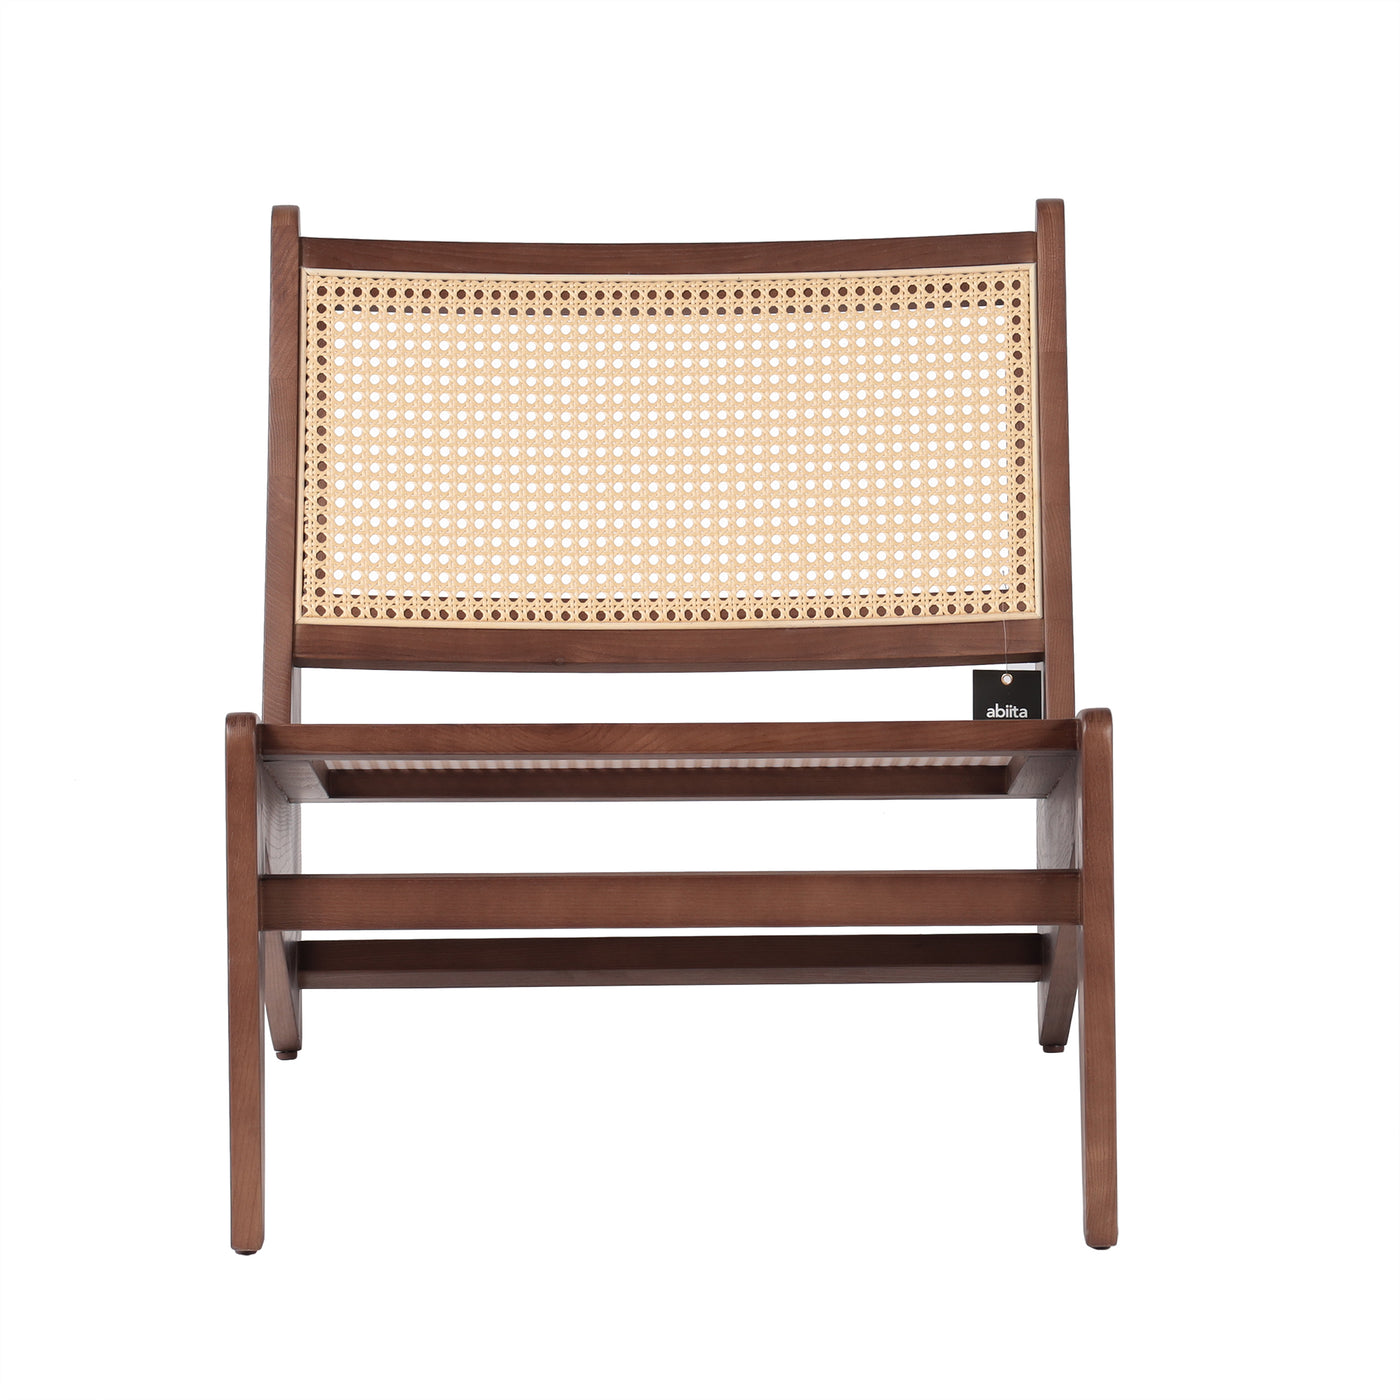 Vintage Wood Lounge Chair